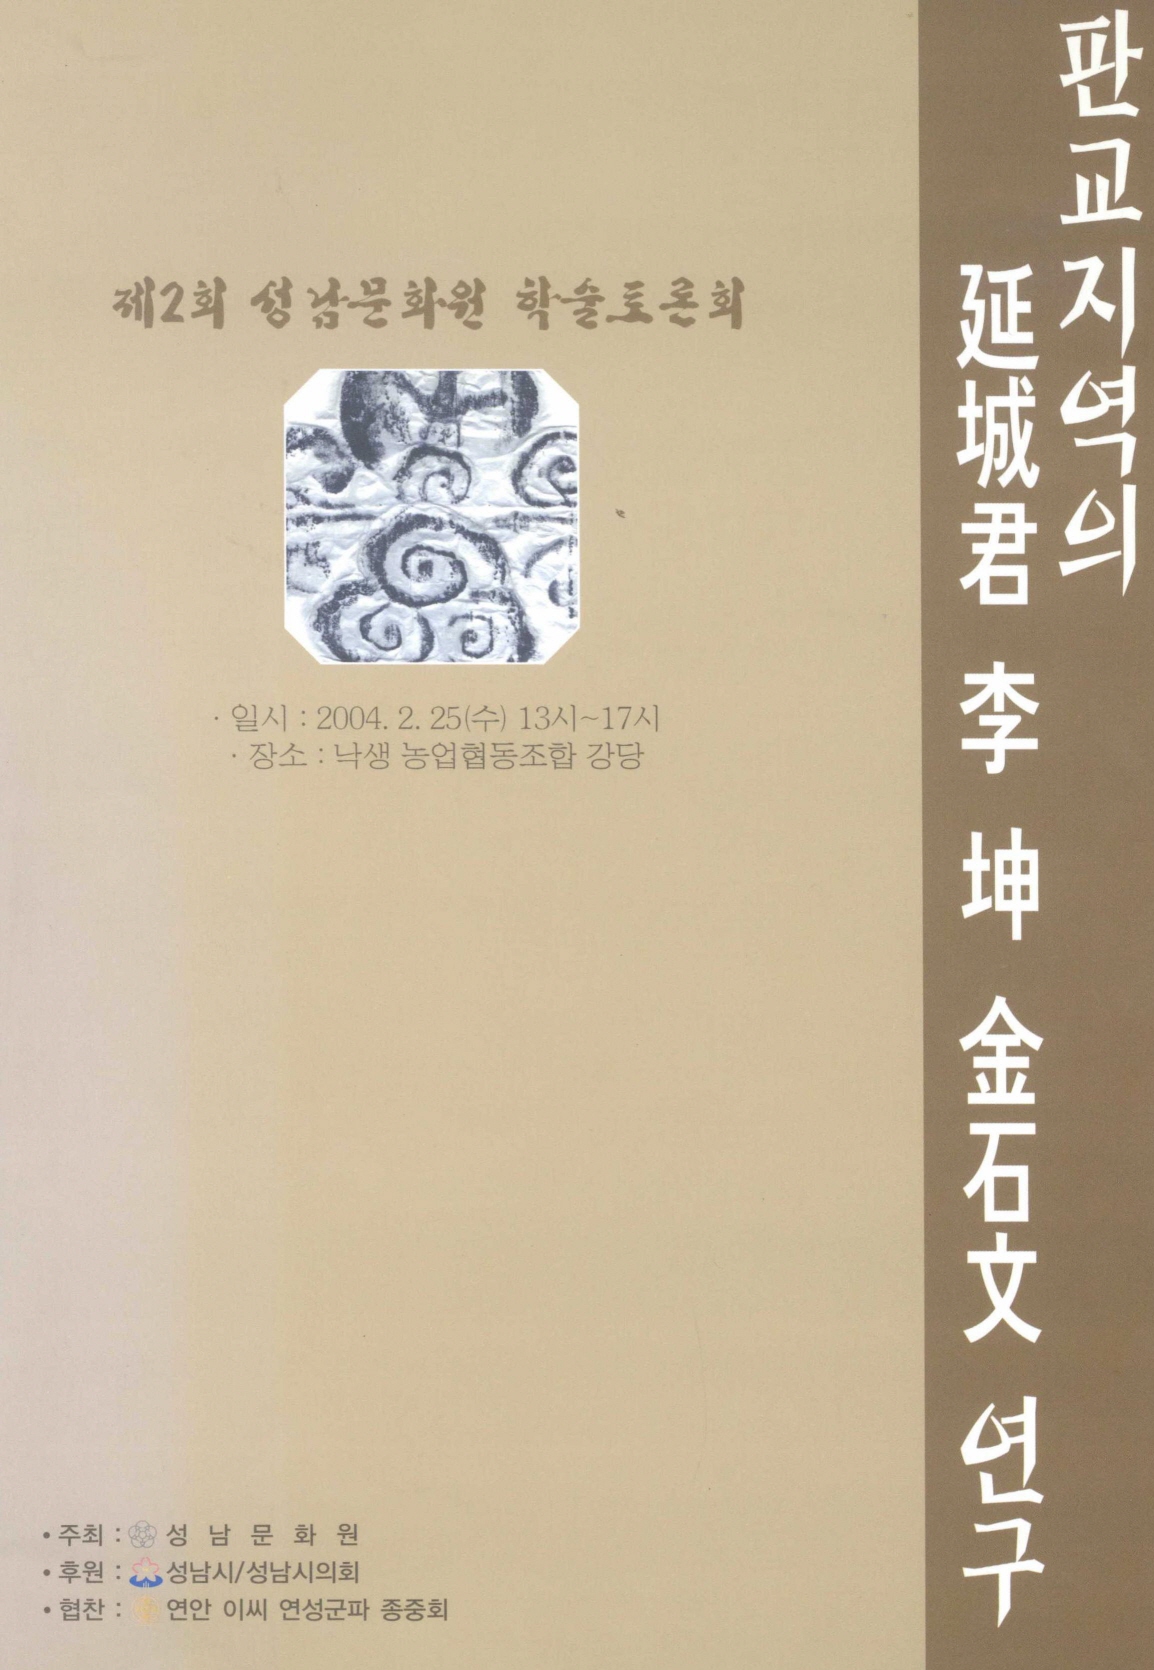 제2회 성남화원 학술토론회 판교지역의 연성군 이 곤 금석문 연구